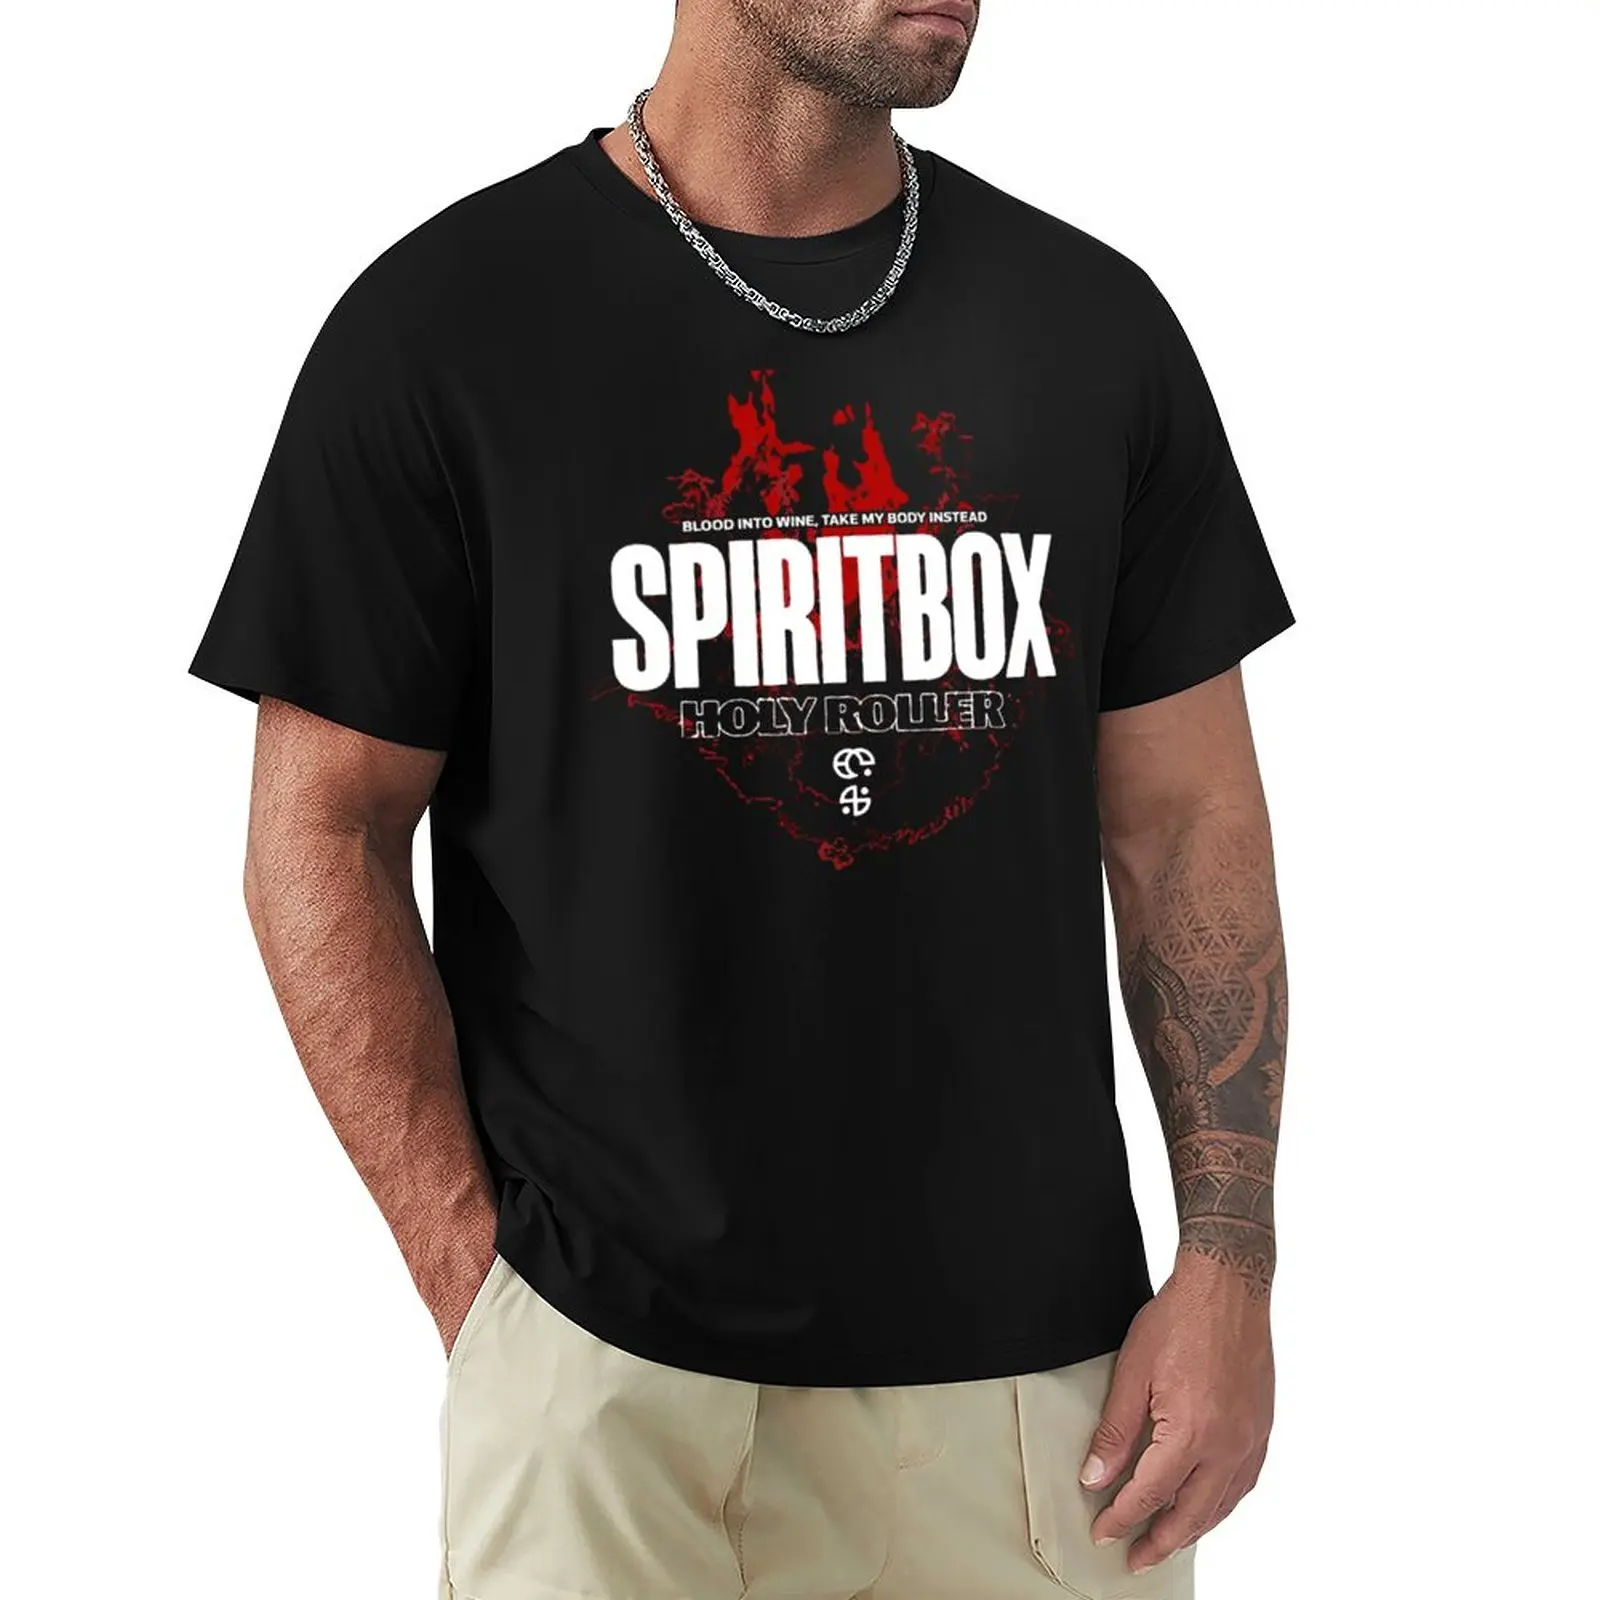 Spiritbox הסחורה הקודש רולר טי-שירט מצחיק חולצה מותאמת אישית חולצה מצחיק חולצות טי-שירט קצרה גדול וגבוה חולצות לגברים